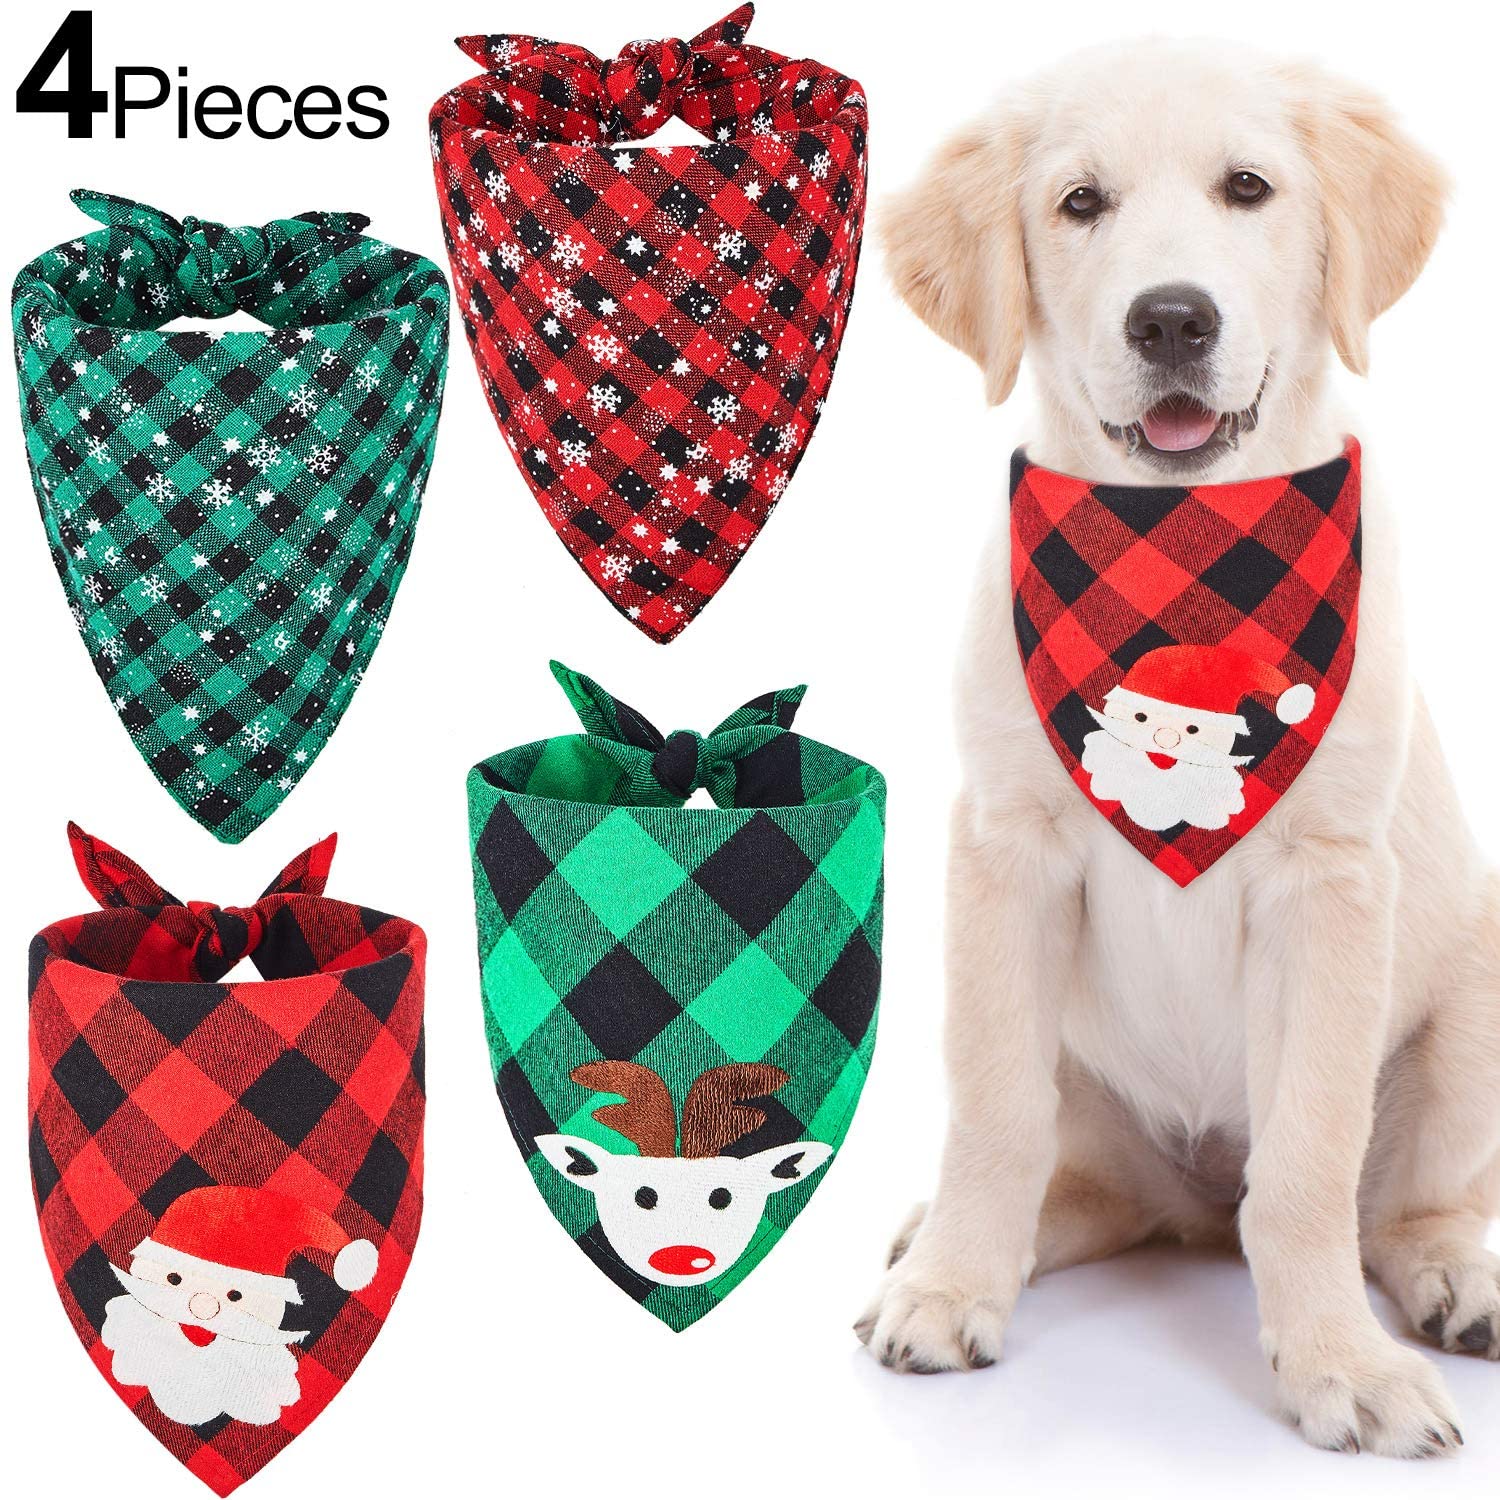  4 Pañuelos de Perro de Papá Noel de Navidad Bufanda Triángulo Mascotas de Tartán Copo de Nieve Babero Ajustable Lavable de Perros para Disfraces de Mascotas Gato Perro en Invierno Navidad 